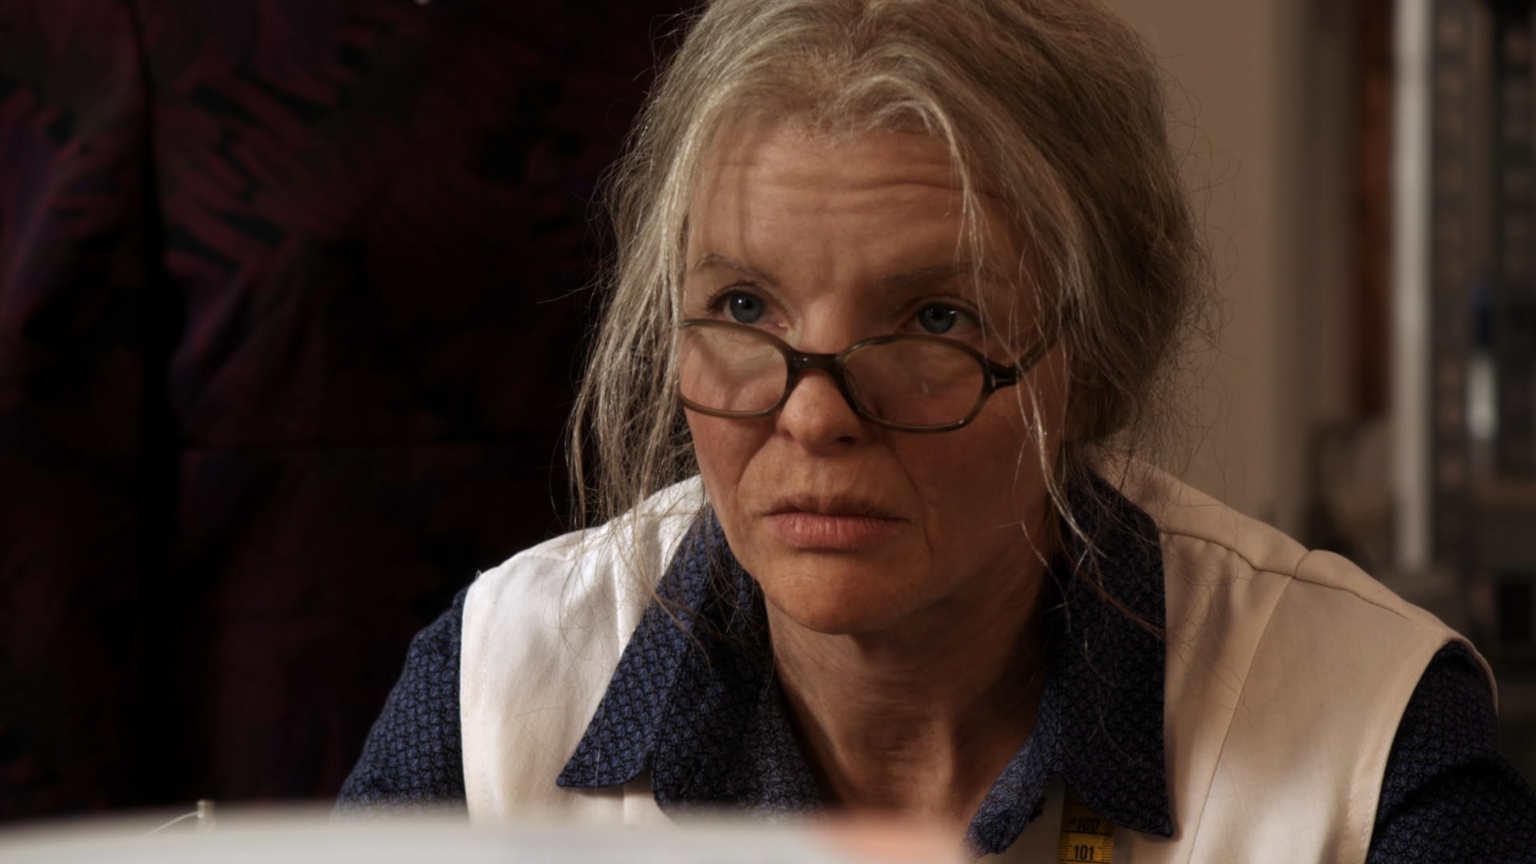 Yvonne Catterfeld as old woman in 